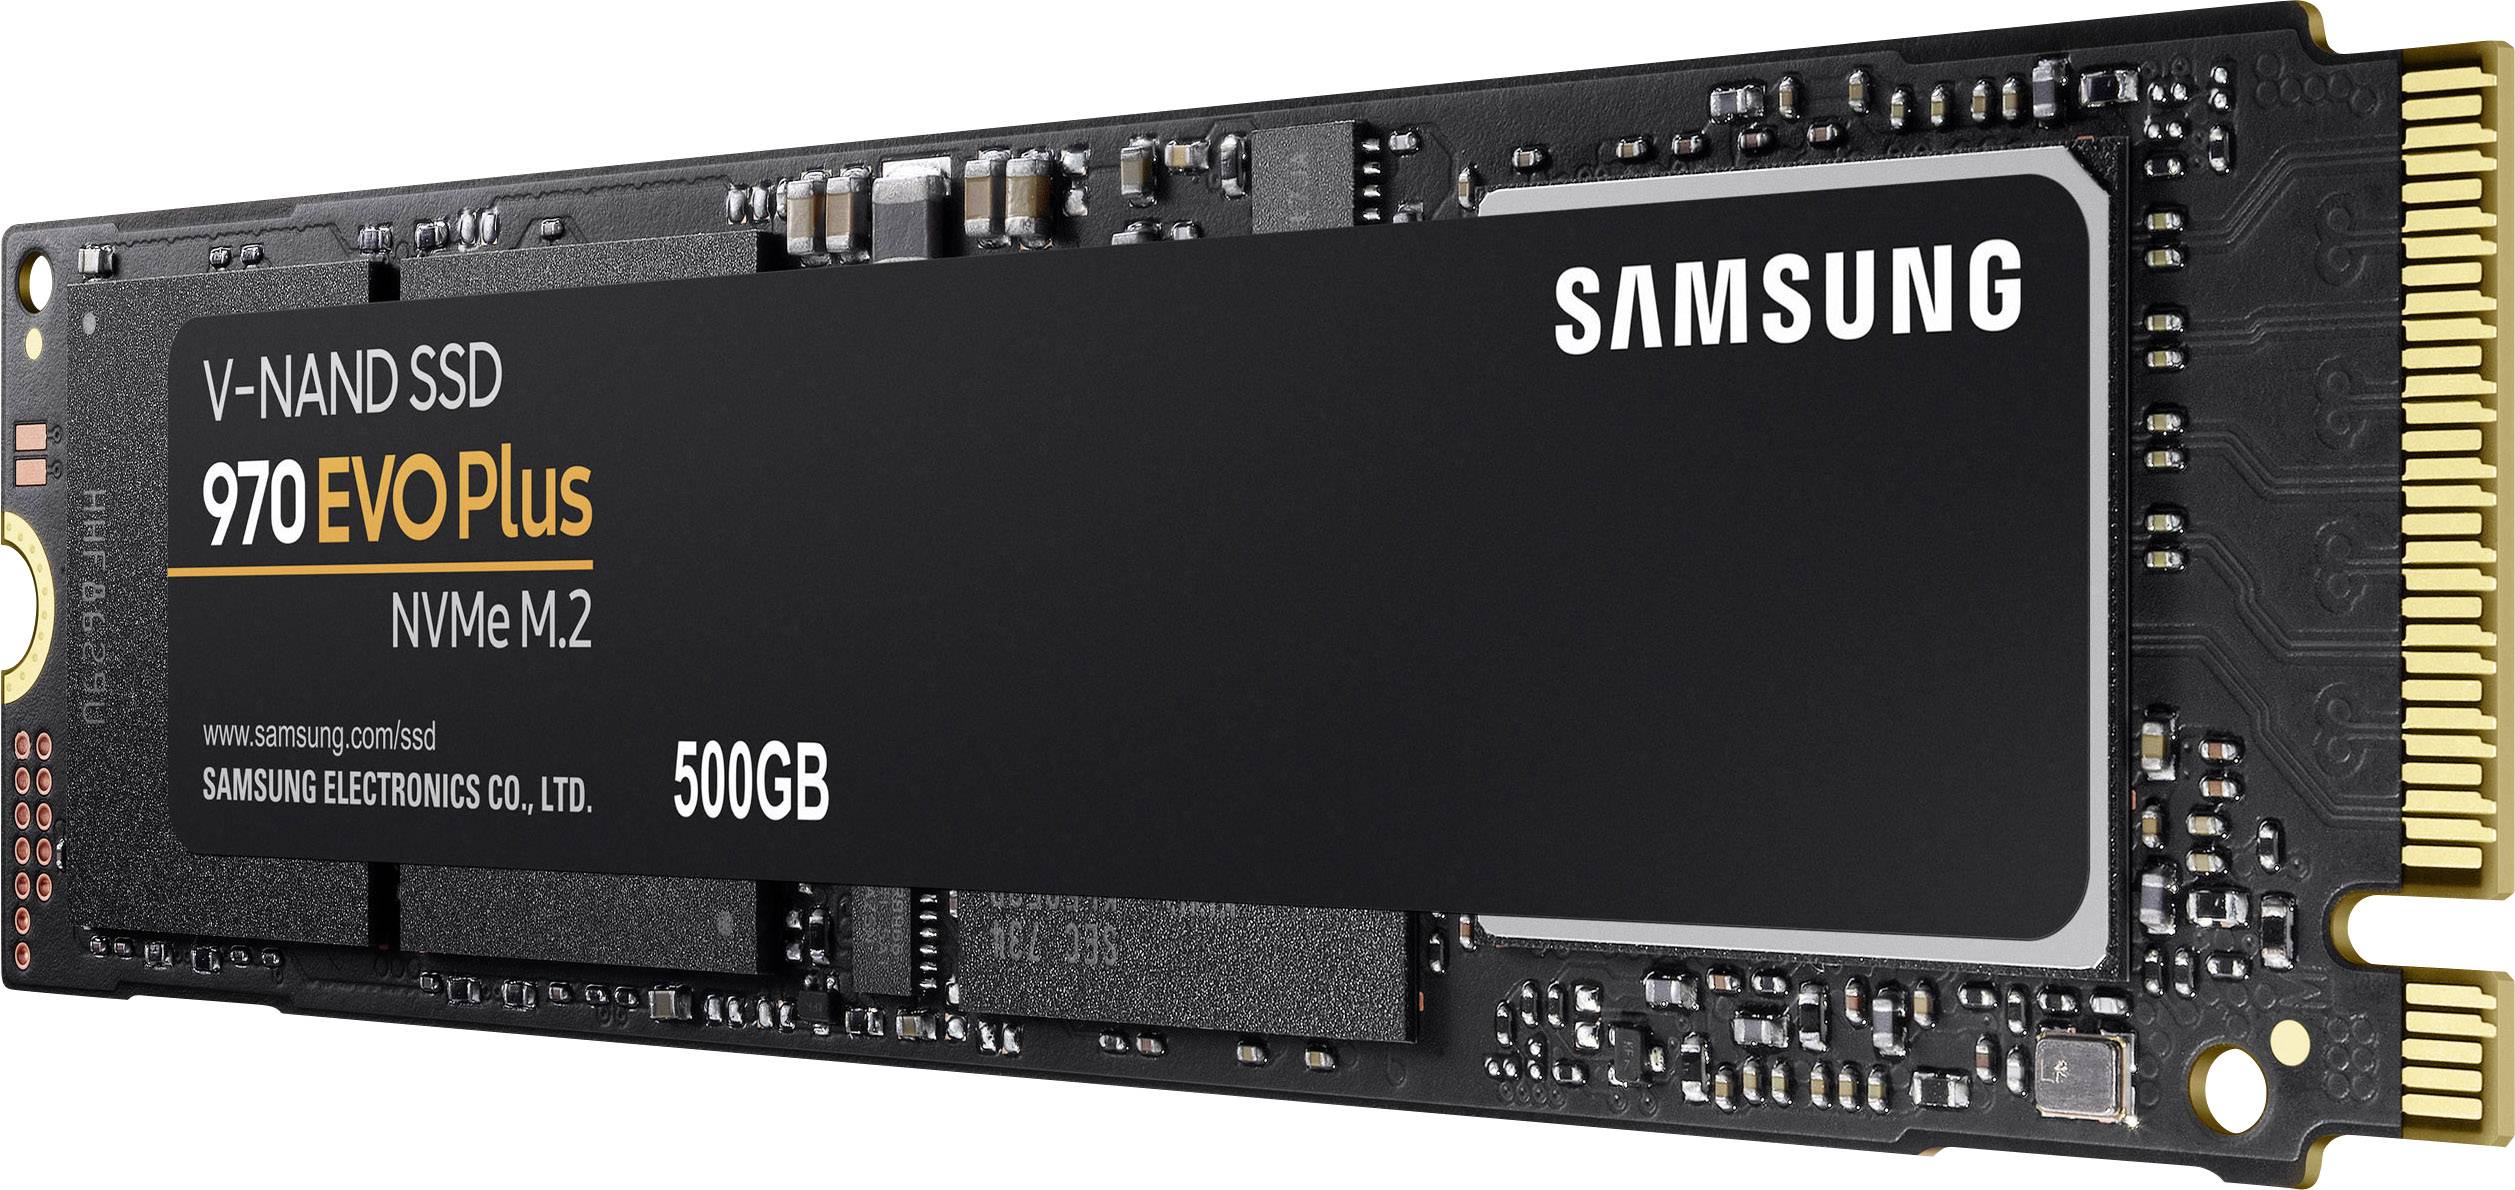 Samsung 970 EVO Plus GB NVMe/PCIe M.2 internal SSD M.2 NVMe PCIe 3.0 x4 Retail MZ-V7S500BW | Conrad.com